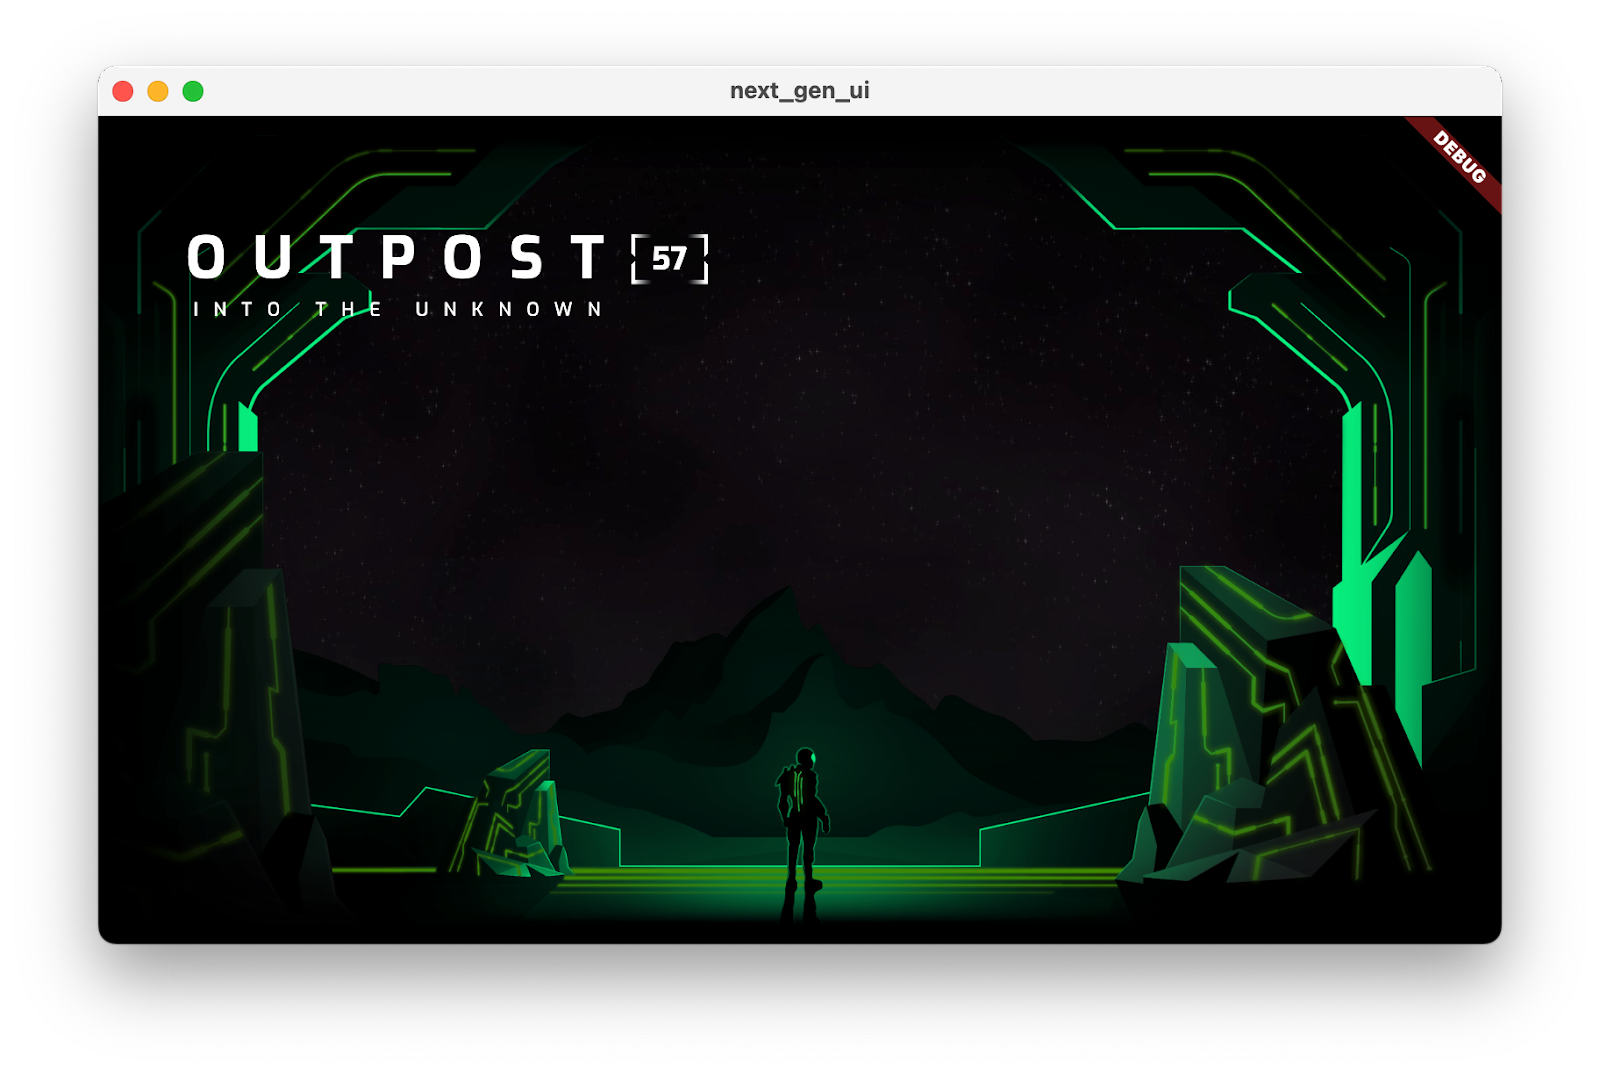 O app do codelab em execução com o título "Outpost [57] Into the desconhecido"